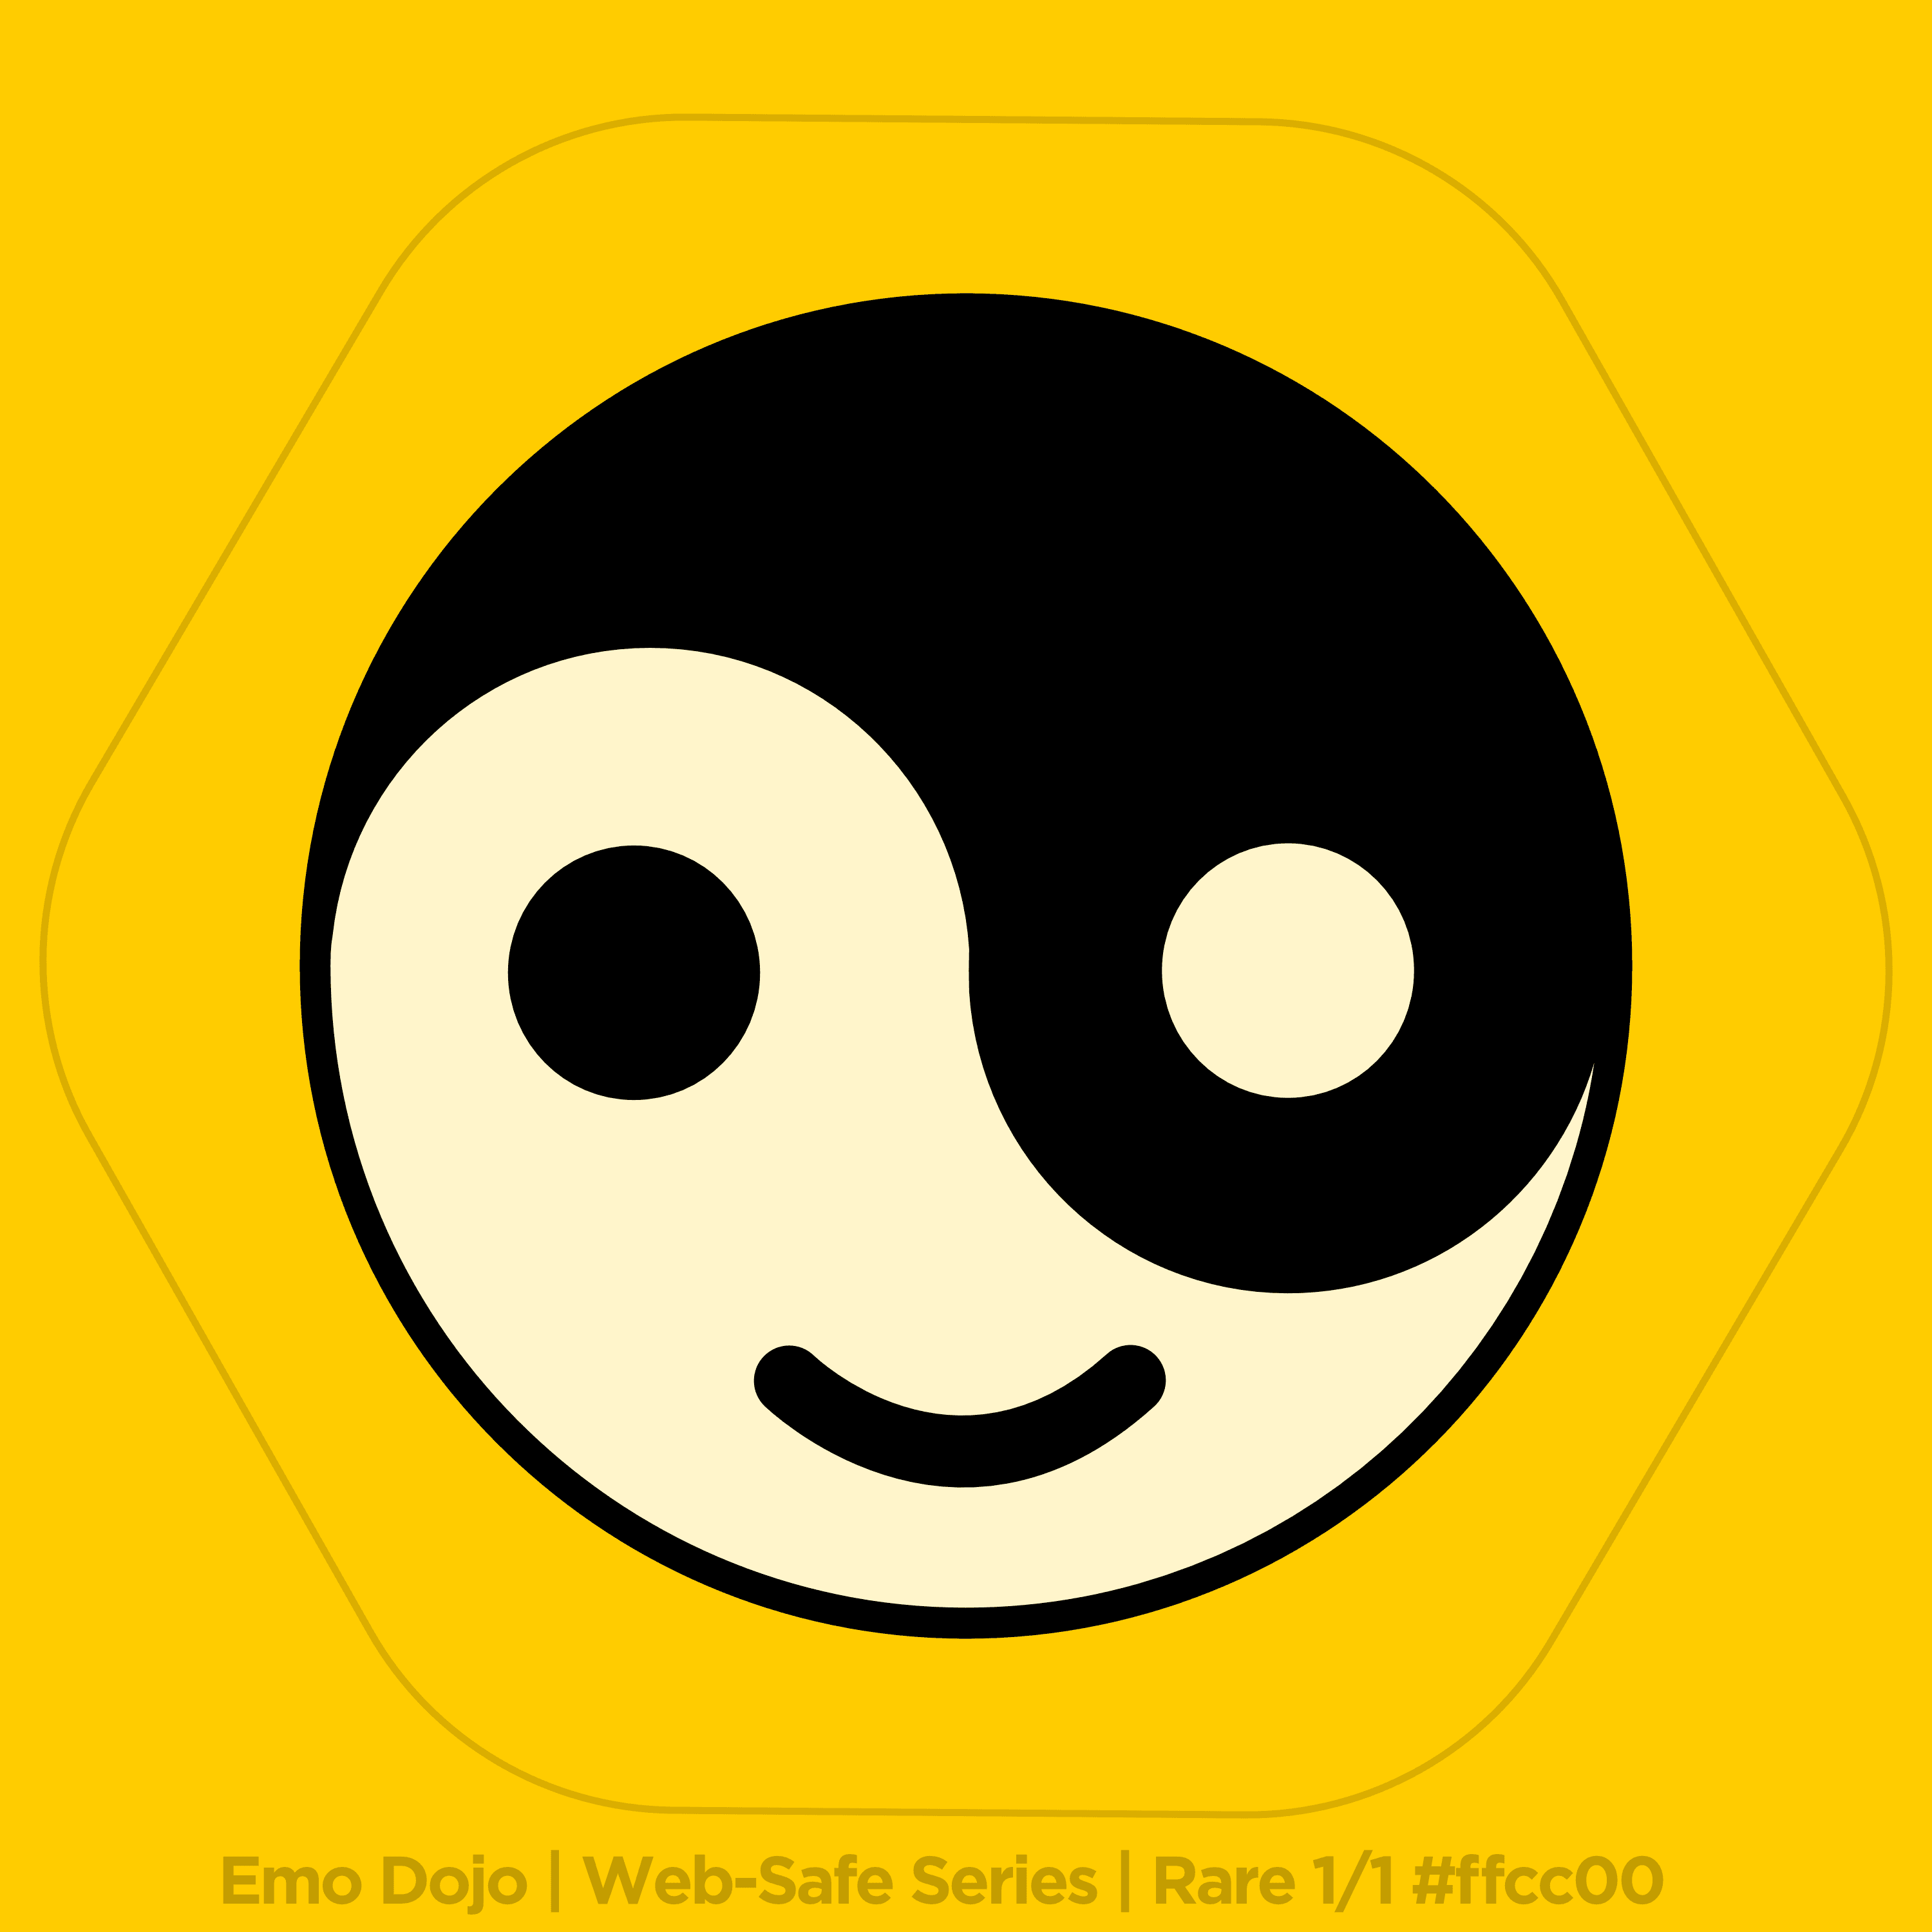 Emo Dojo | Web-Safe Series | Rare 1/1 #ffcc00